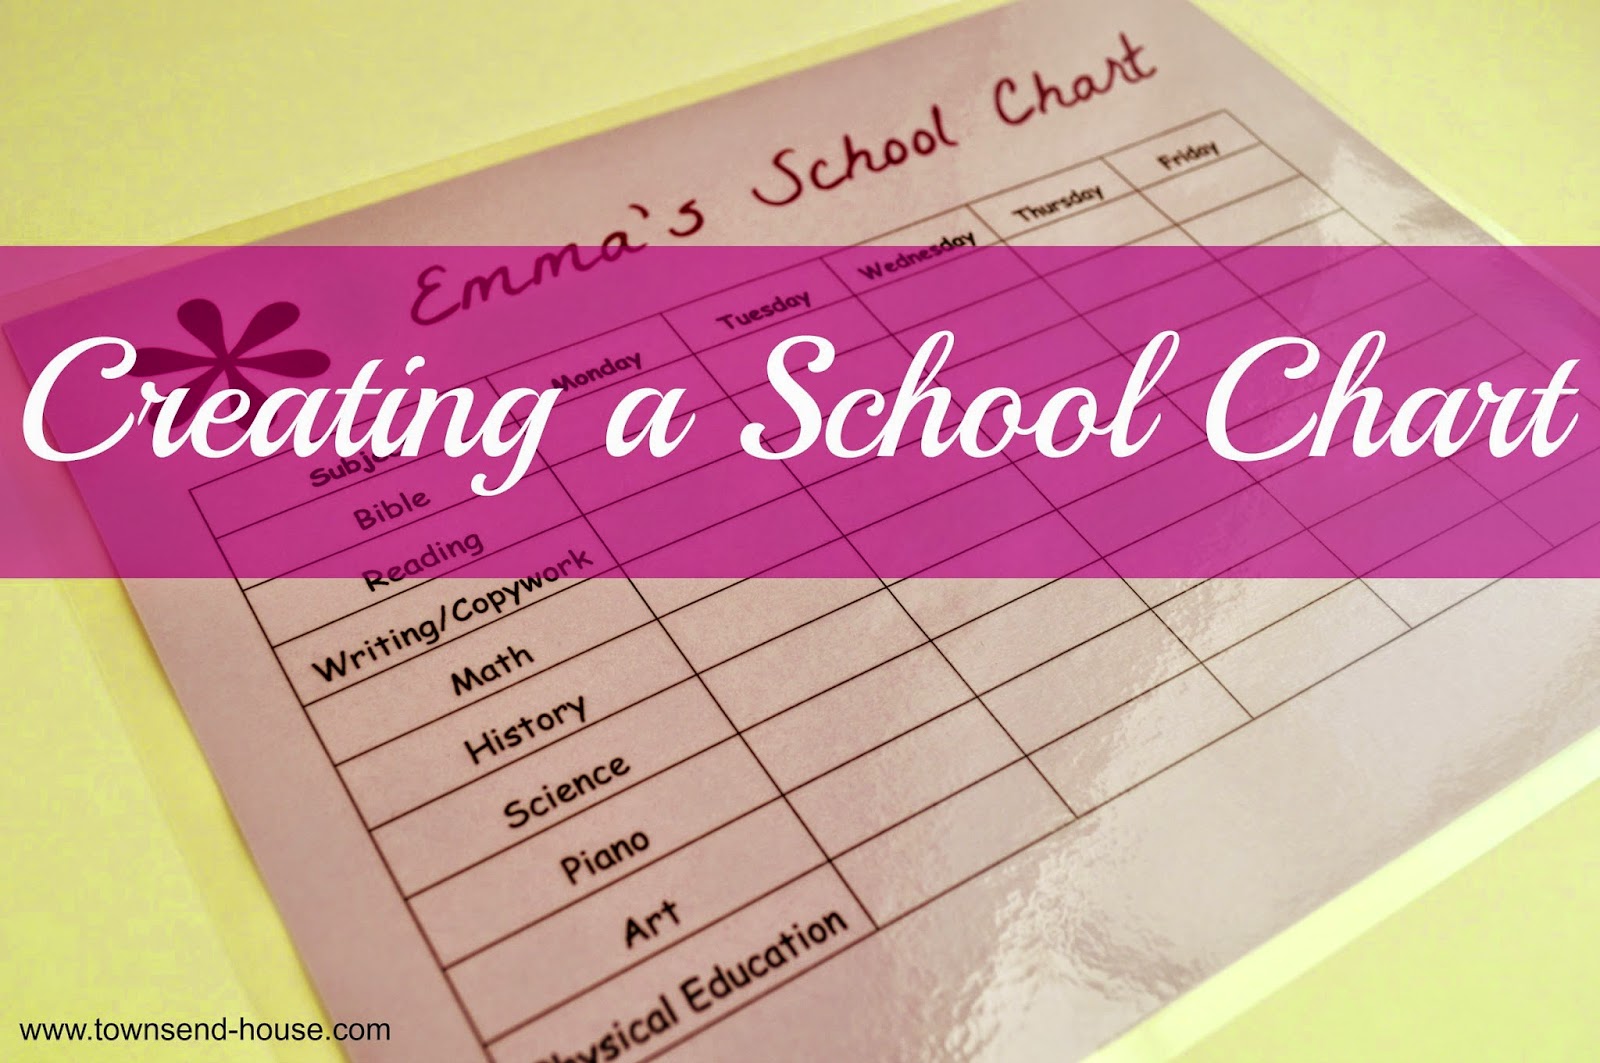 Making a School Chart